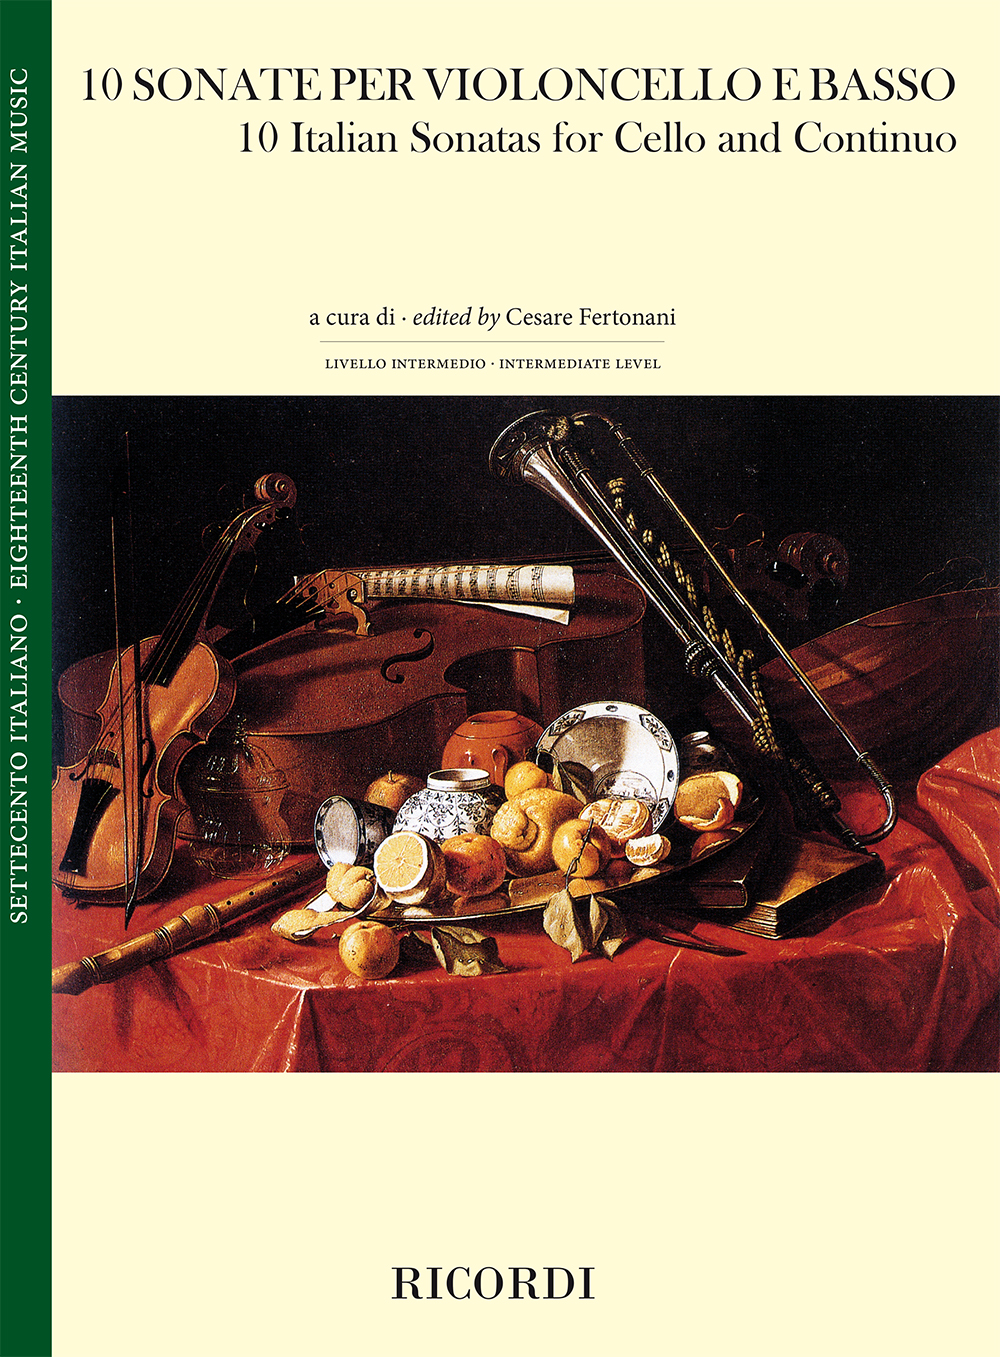 10 Sonate per violoncello e basso continuo: Cello